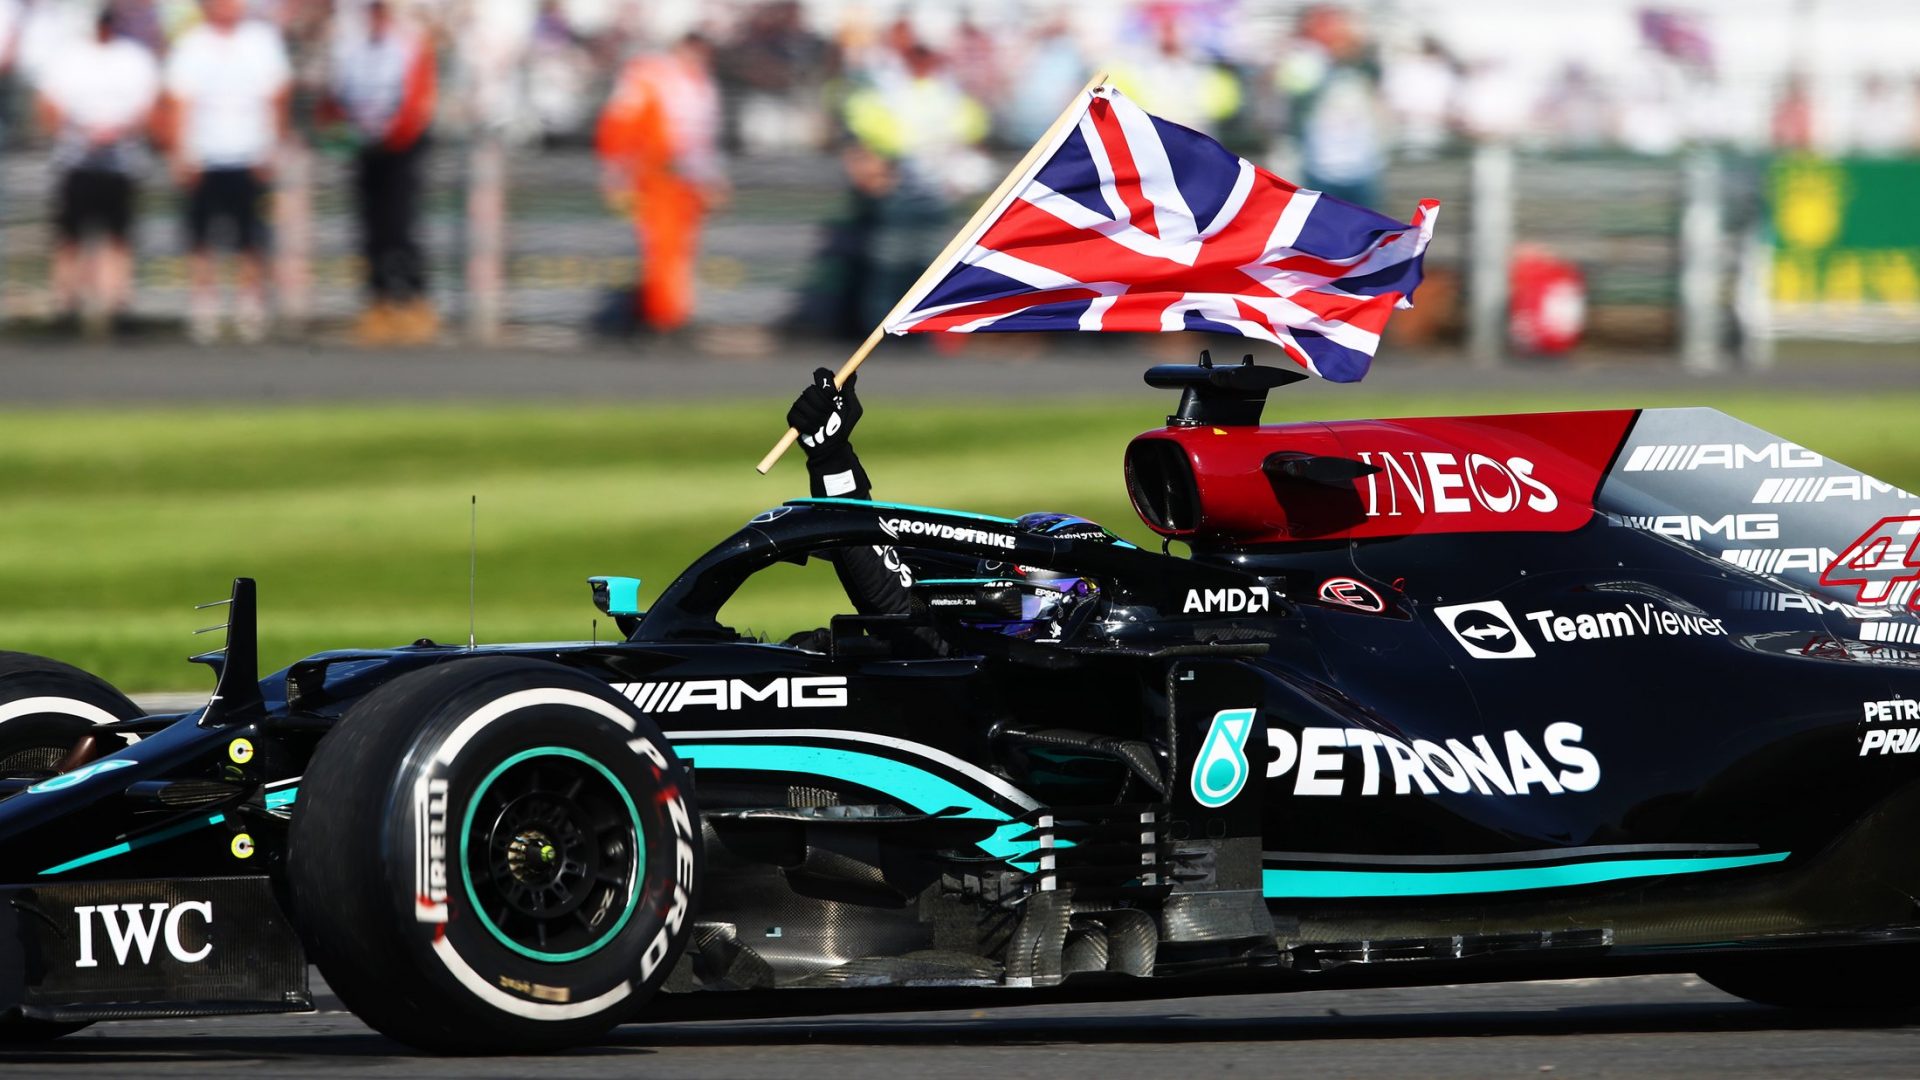 F1, le ultime notizie su Lewis Hamilton dal fratello Nicolas: “Sta bene”, ma chi ne sta pagando le conseguenze?